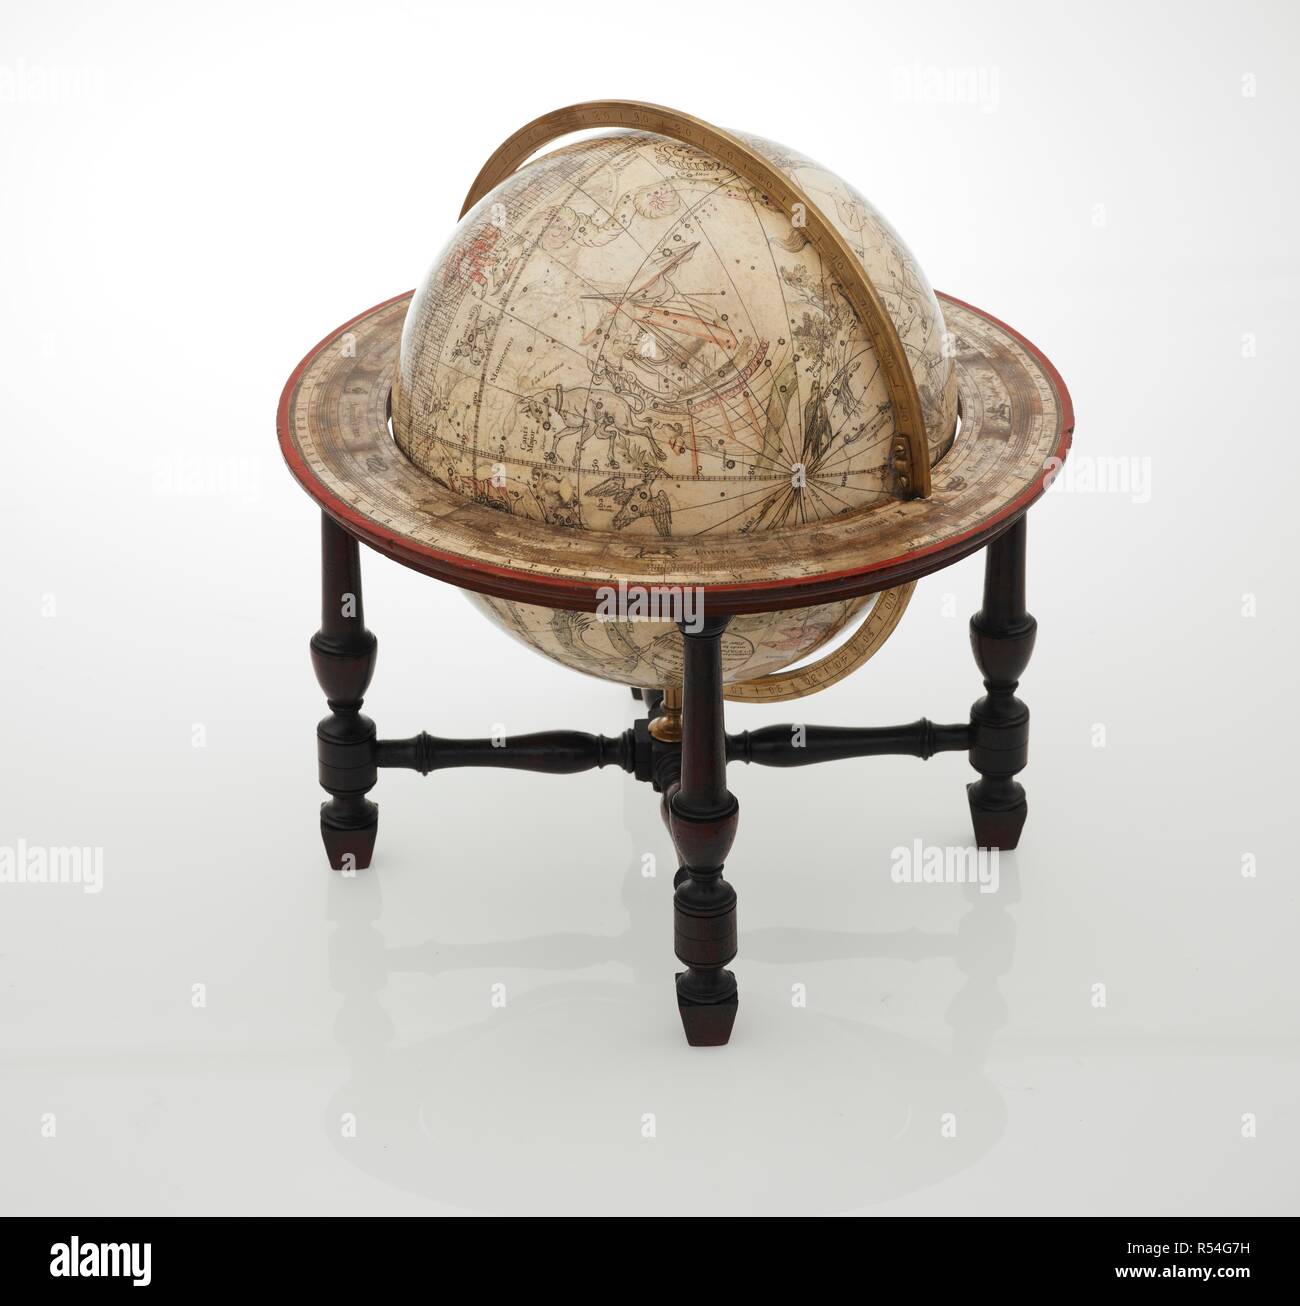 Globo celeste. Il globo celeste ... realizzato da W. Bardin, ecc. Londra :  Harrison & Co., 1785. Descrizione fisica: 230 mm di diametro. Fonte: Mappe  G.8a Foto stock - Alamy